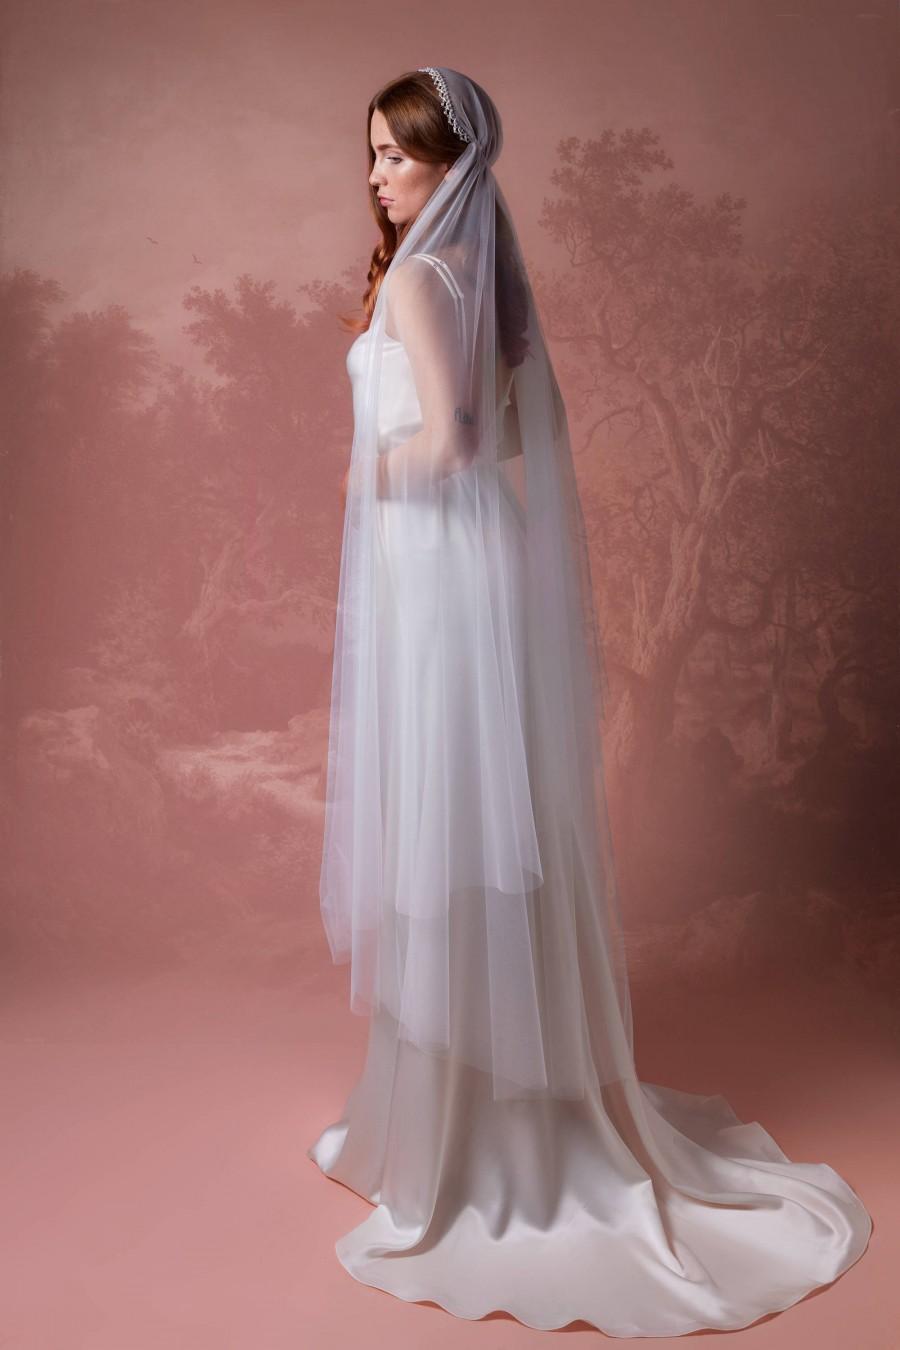 Wedding - Juliet Bridal Cap Veil with Blusher A5, Bridal Veil, Crystal Edge Veil, Vintage Veil, Waltz, Chapel, Cathedral Veil, Boho Veil